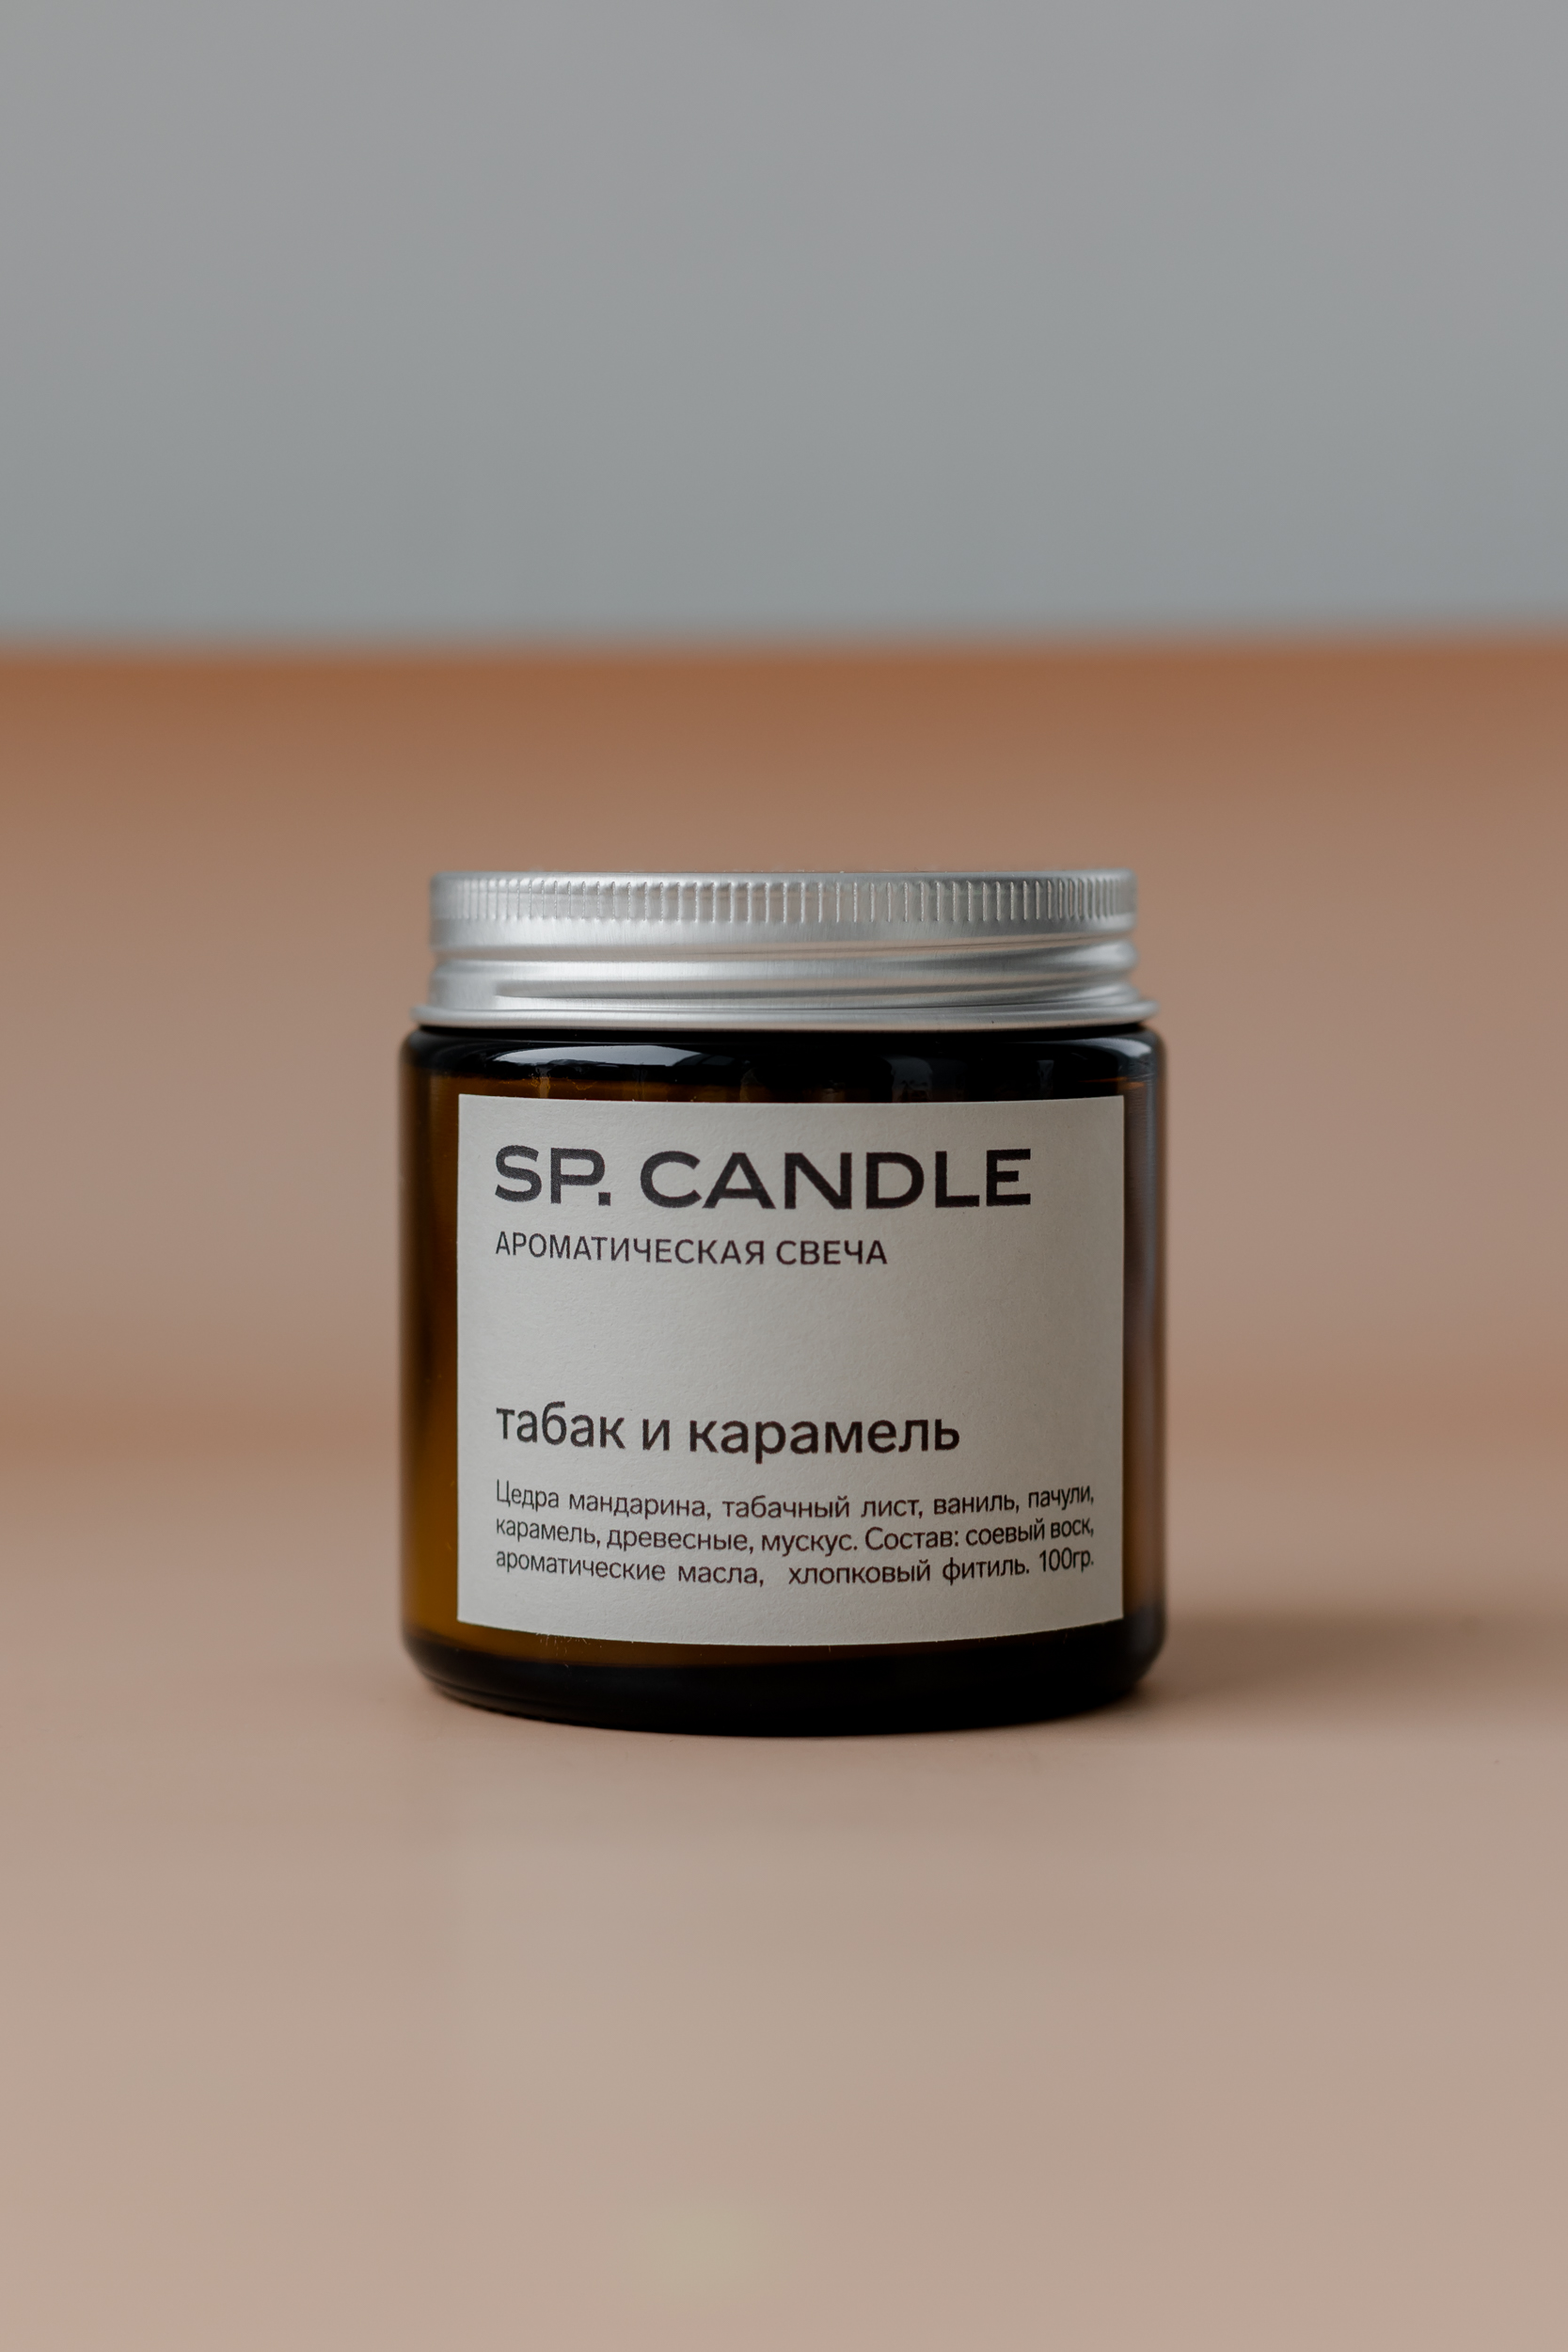 SP. CANDLE Ароматическая свеча Табак и карамель, 100г